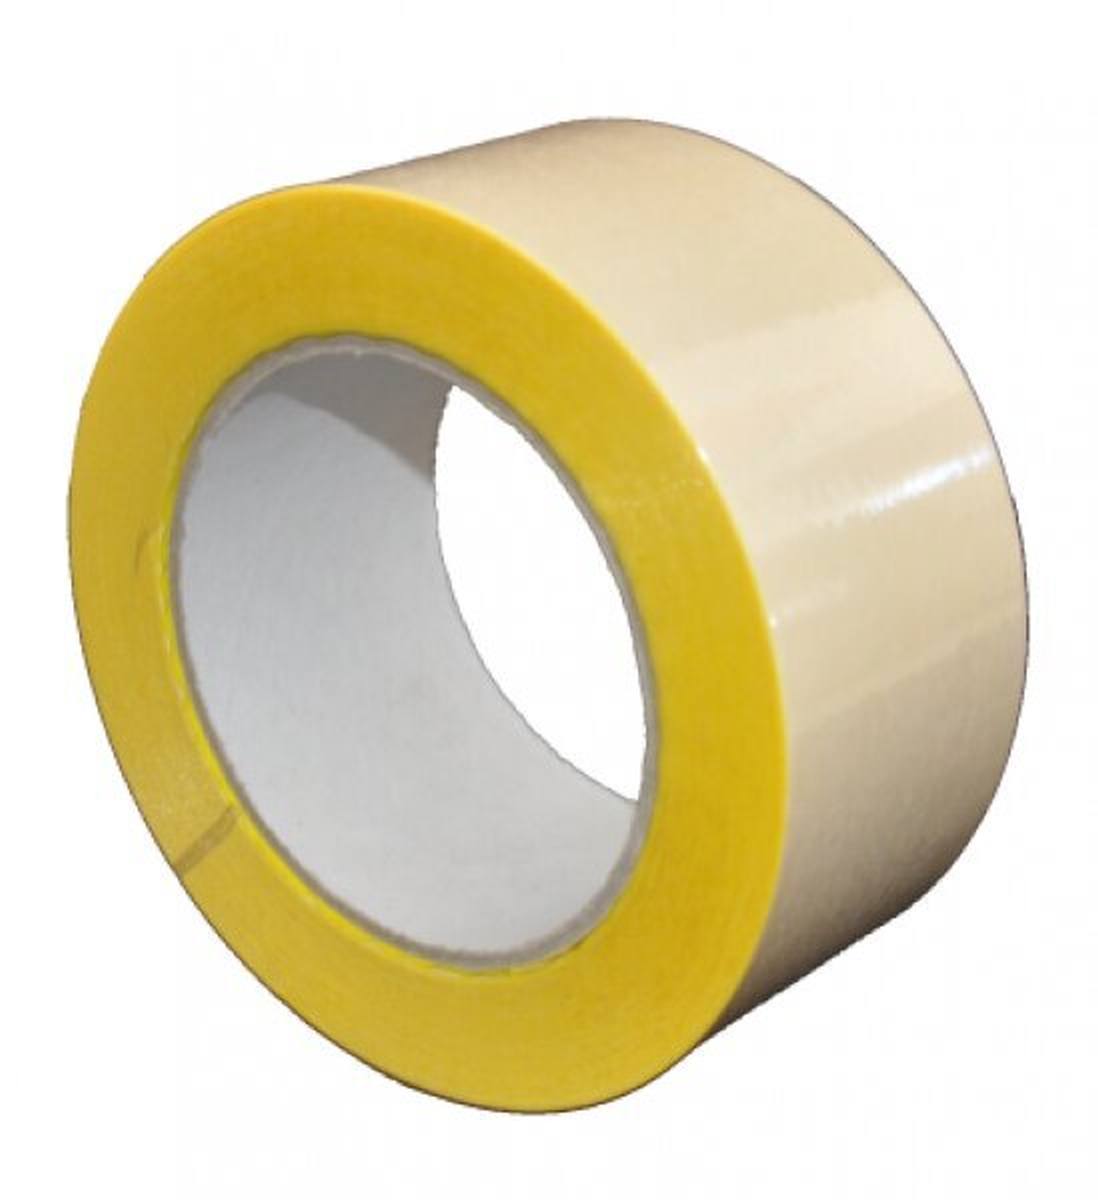 S-K-S 407 Cinta adhesiva de doble cara con soporte de polipropileno, alta / baja adhesividad, amarilla, 100 mm x 50 m, 0,15 mm